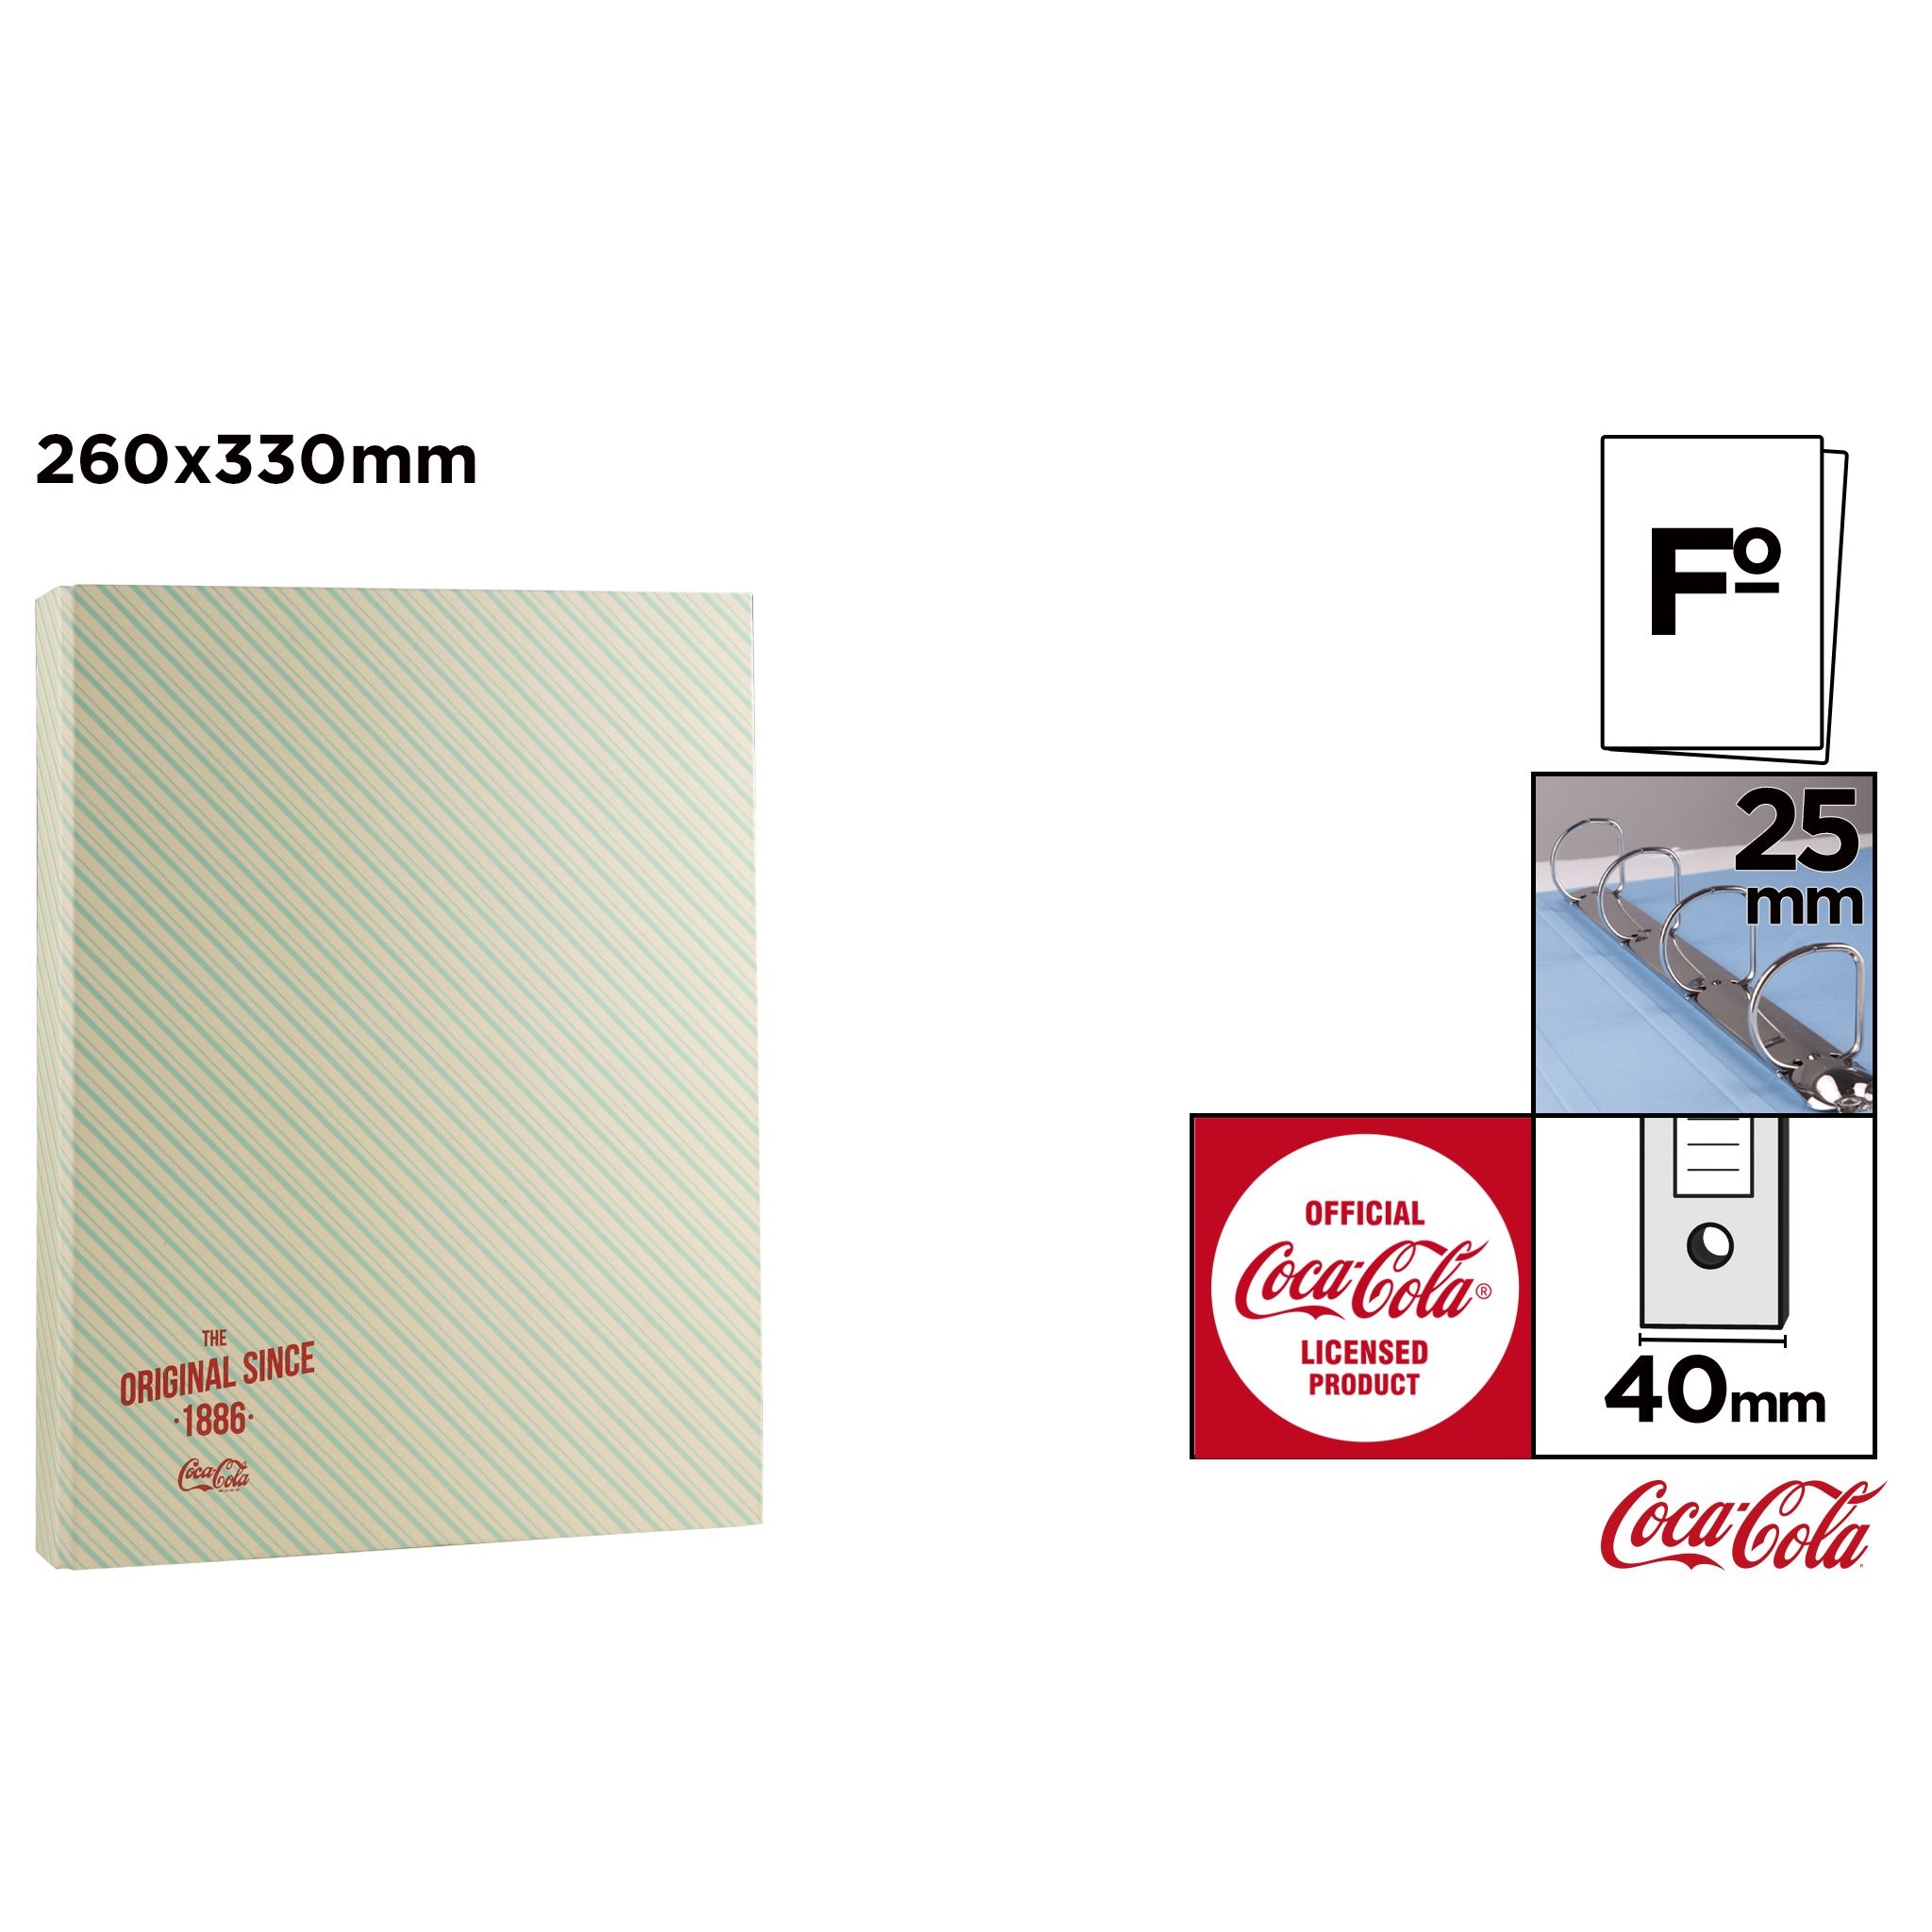 CC010 Coca-Cola Folder File Box Organizer